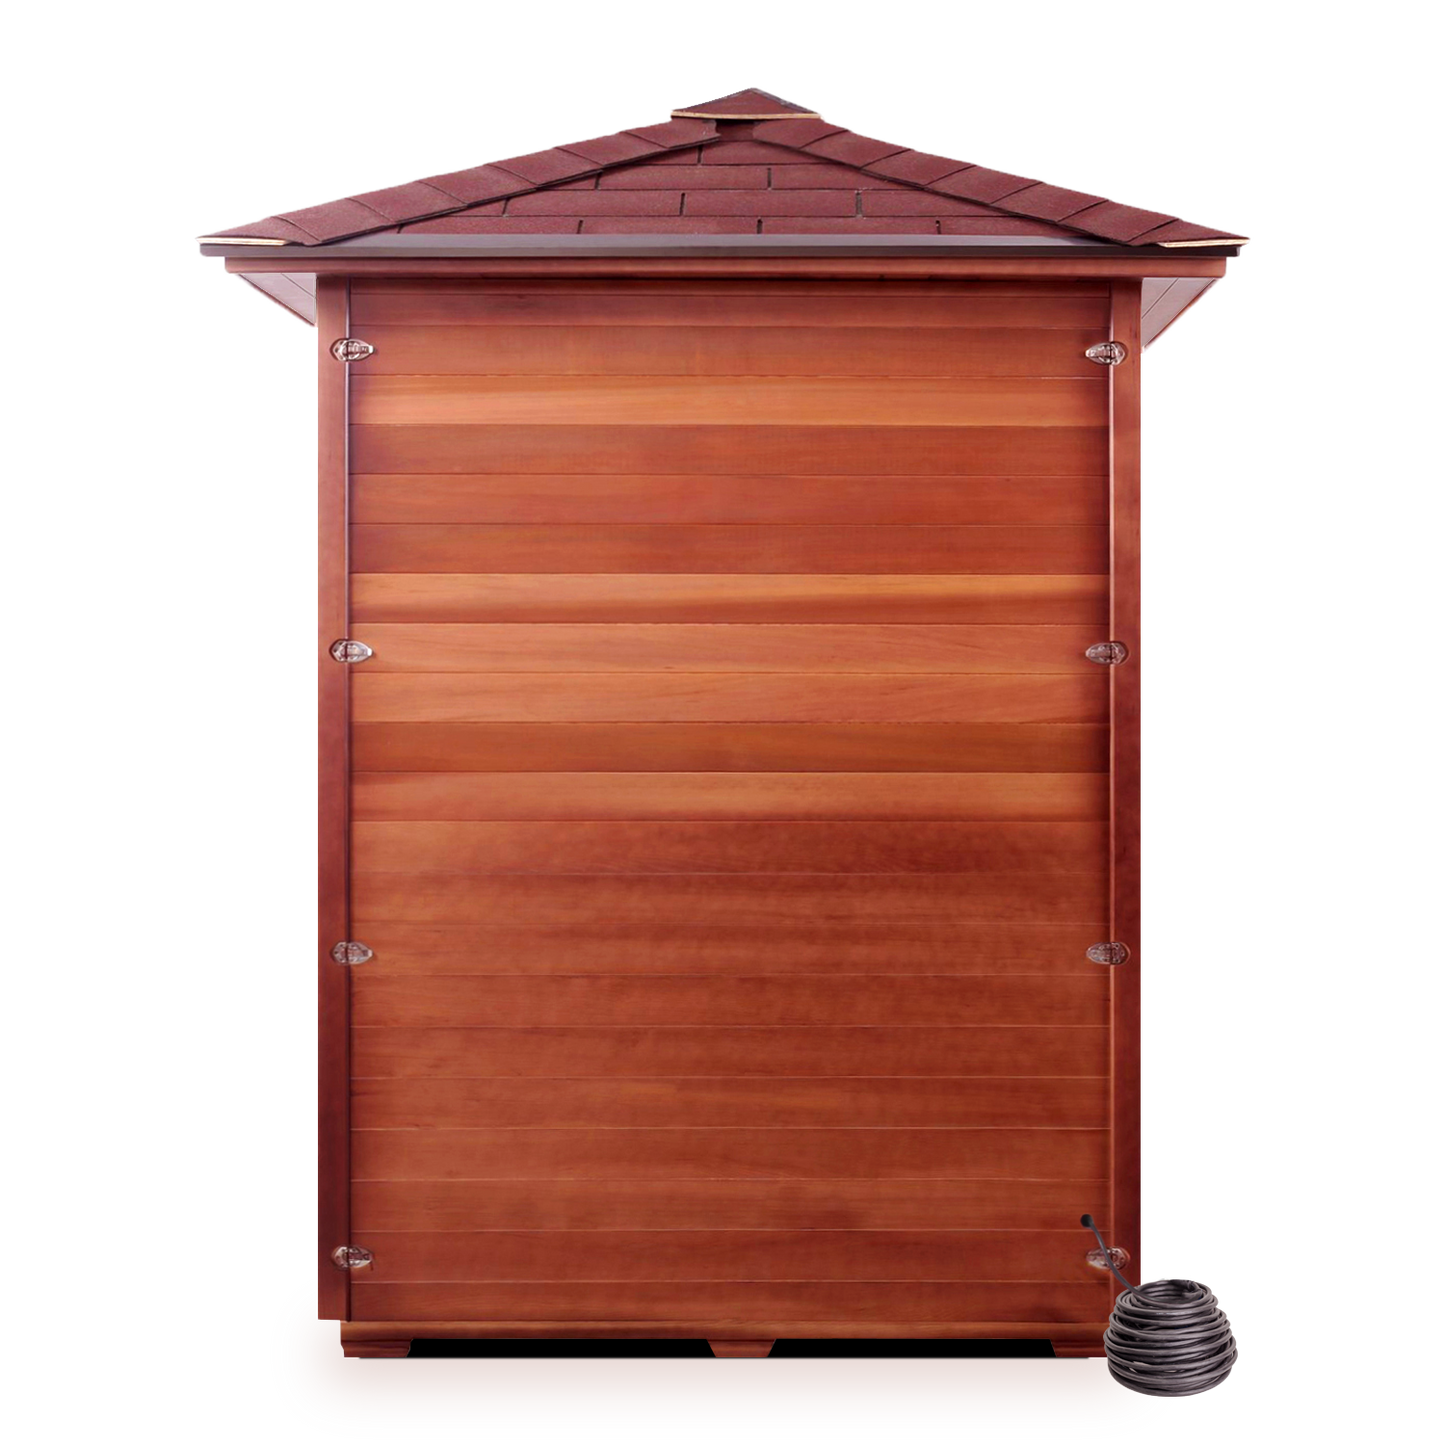 Sierra-C Outdoor Infrared Sauna